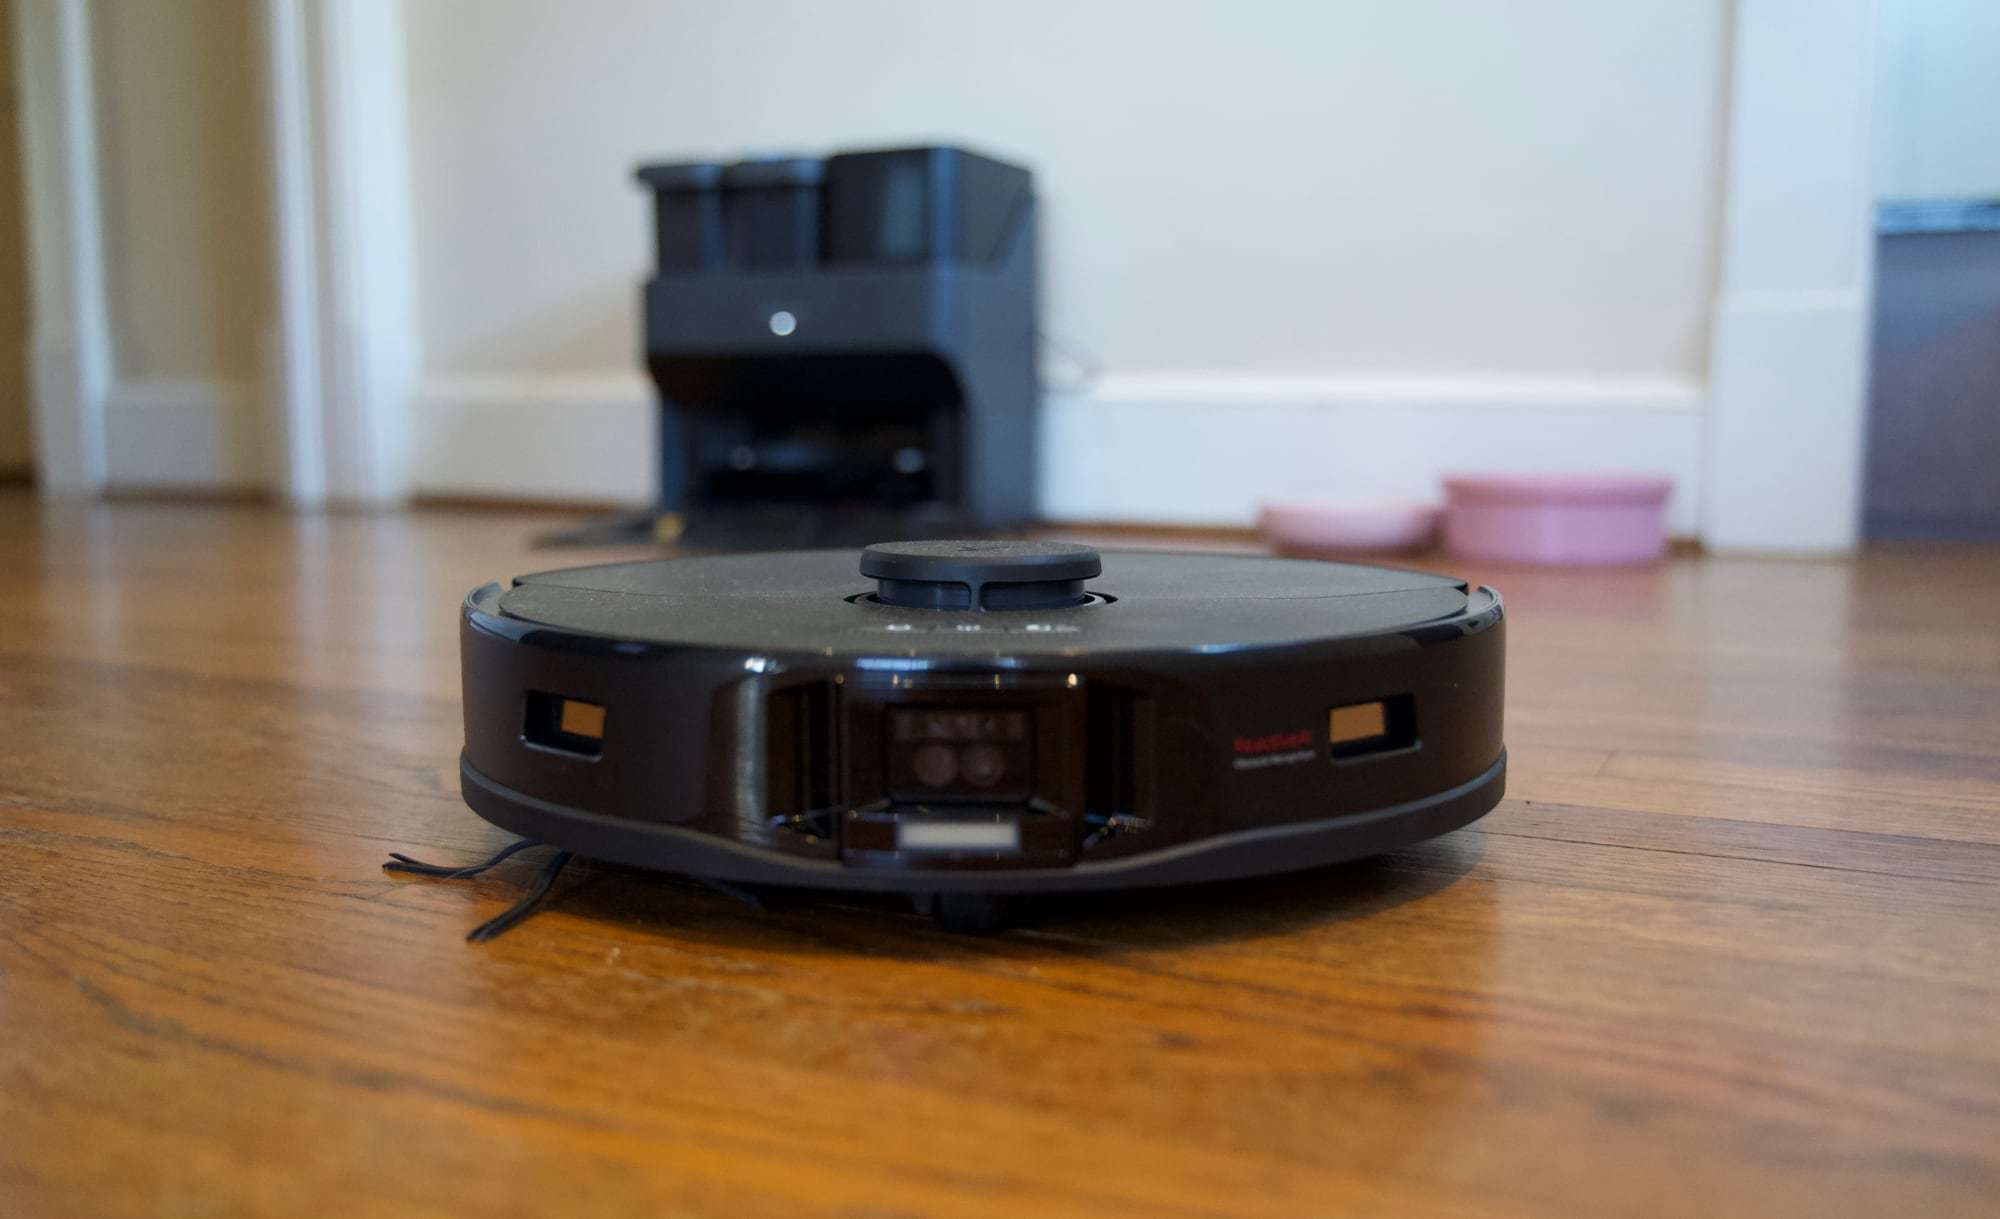 Probamos el Roborock S7 MaxV Ultra: en casa, que trabaje el robot